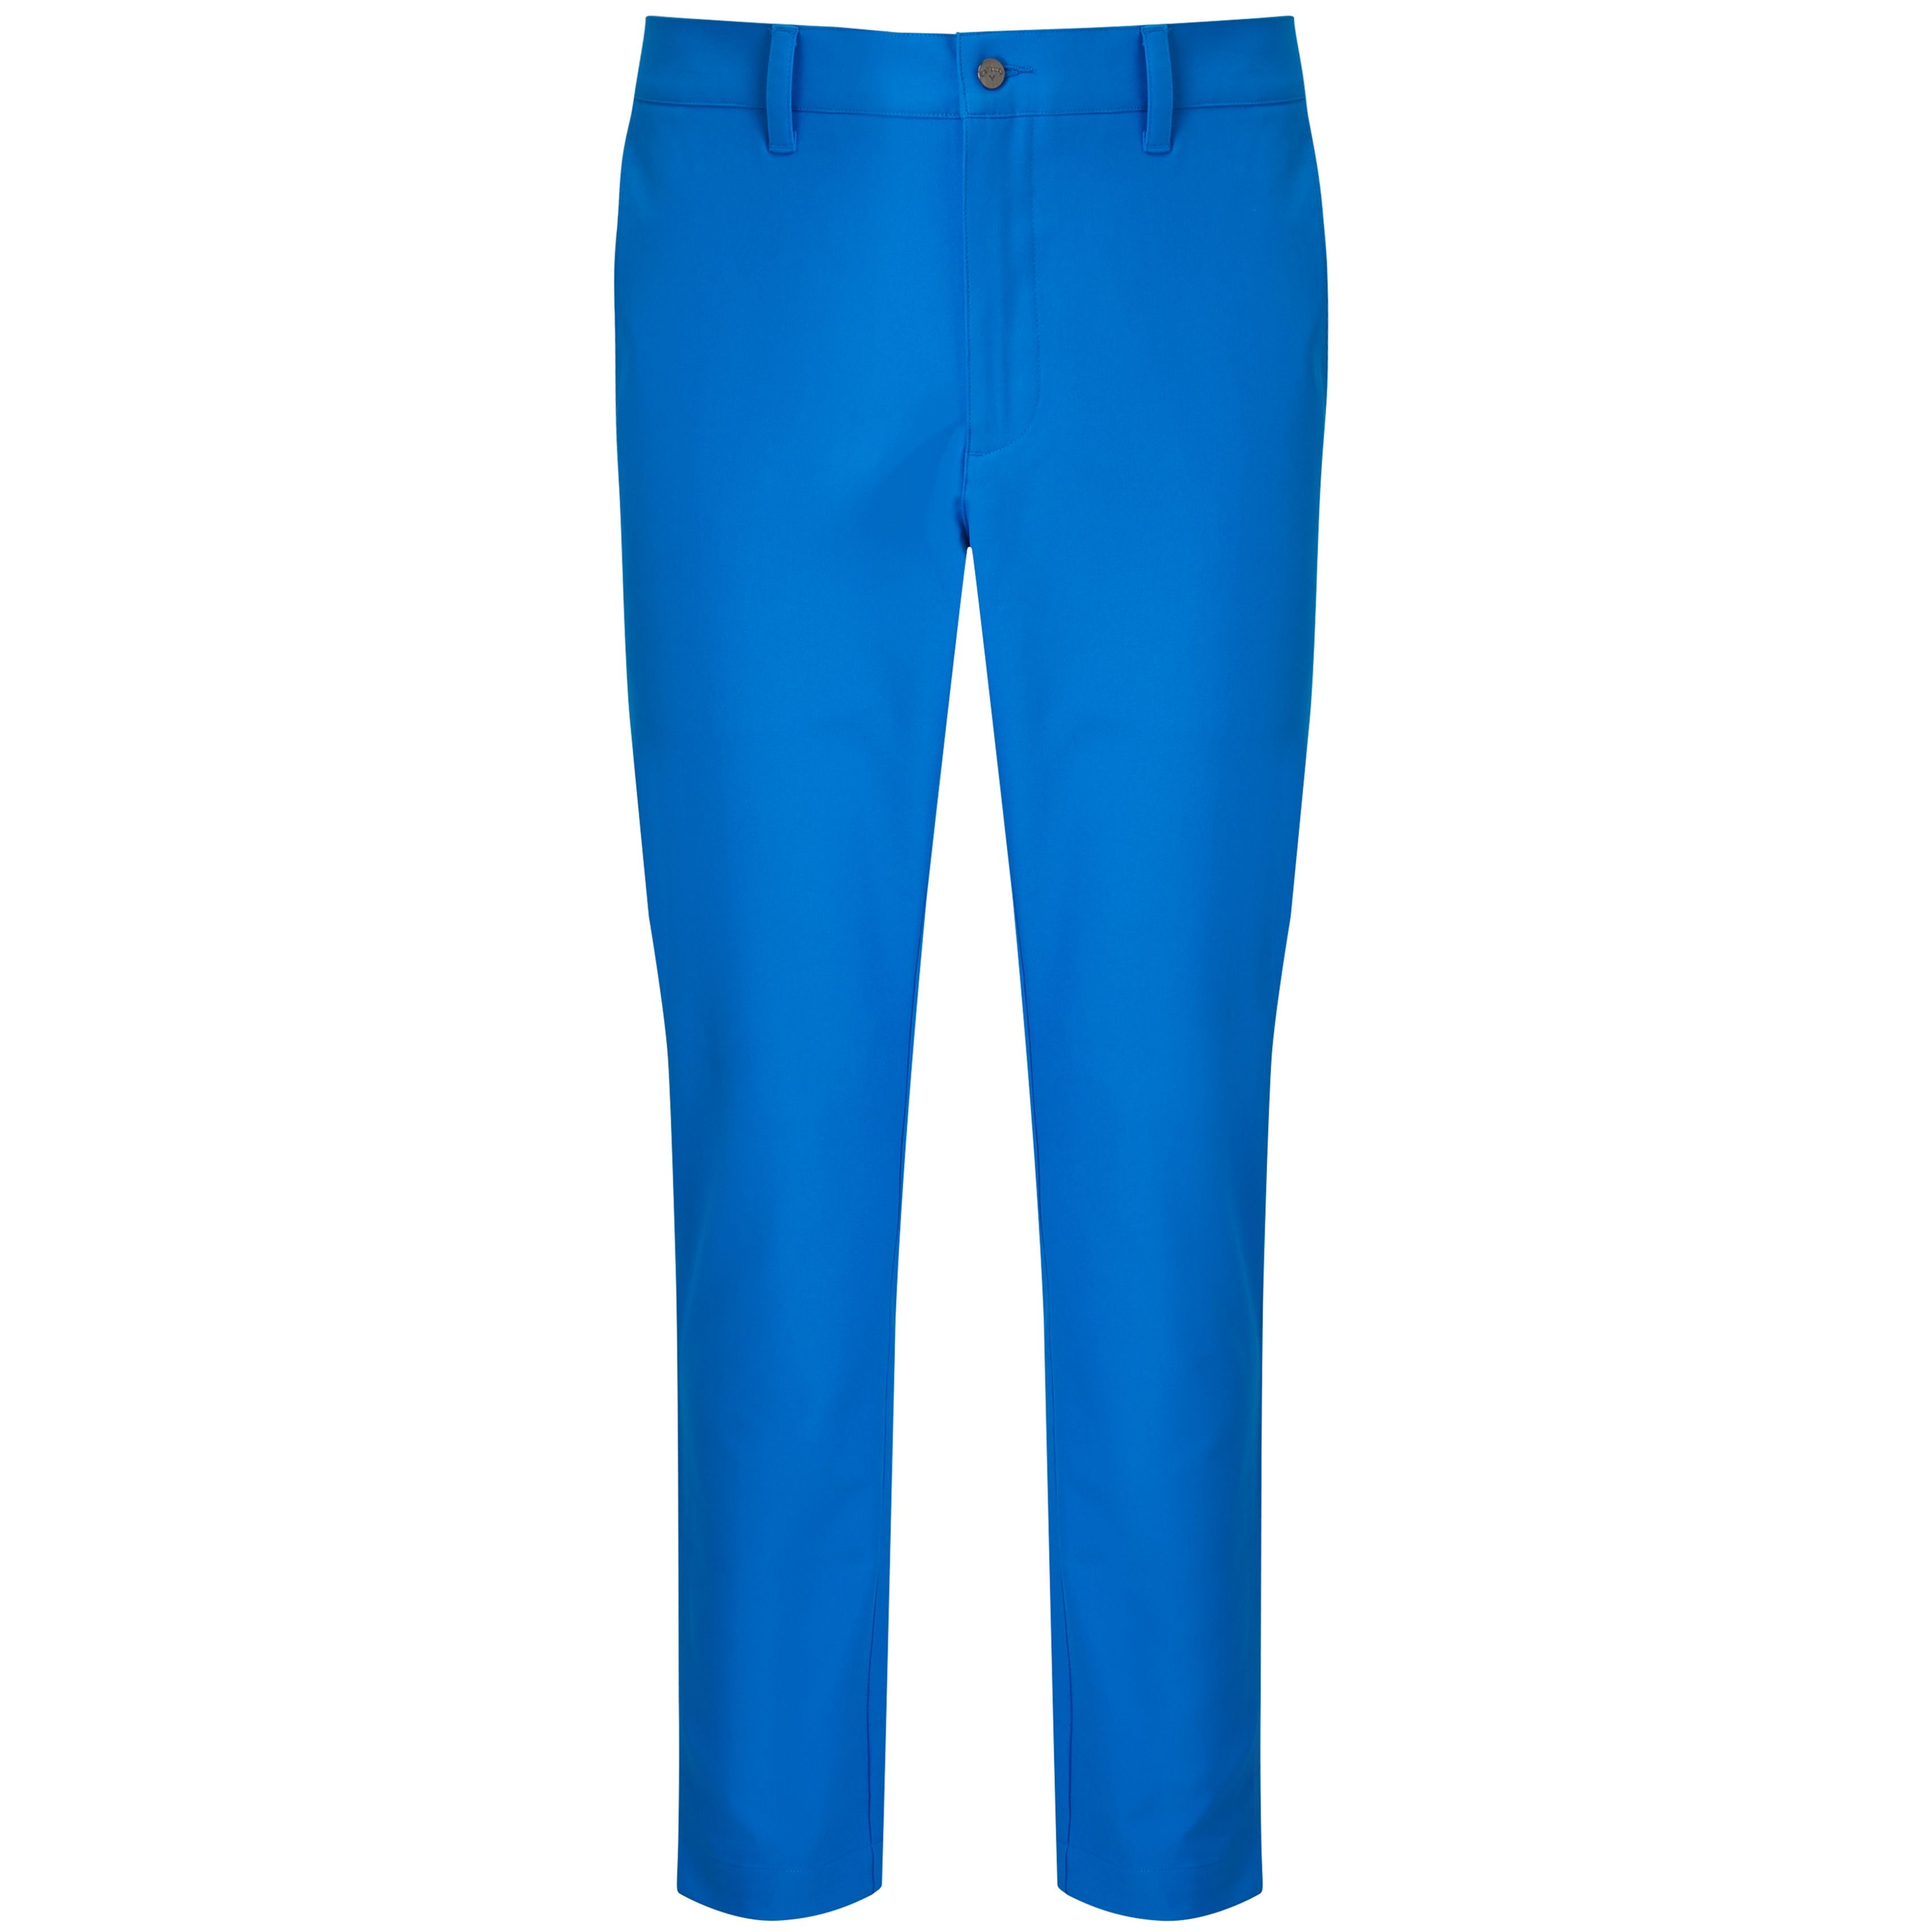 Pantalón Callaway Range CGBS80K8 Azul eléctrico | Golf -